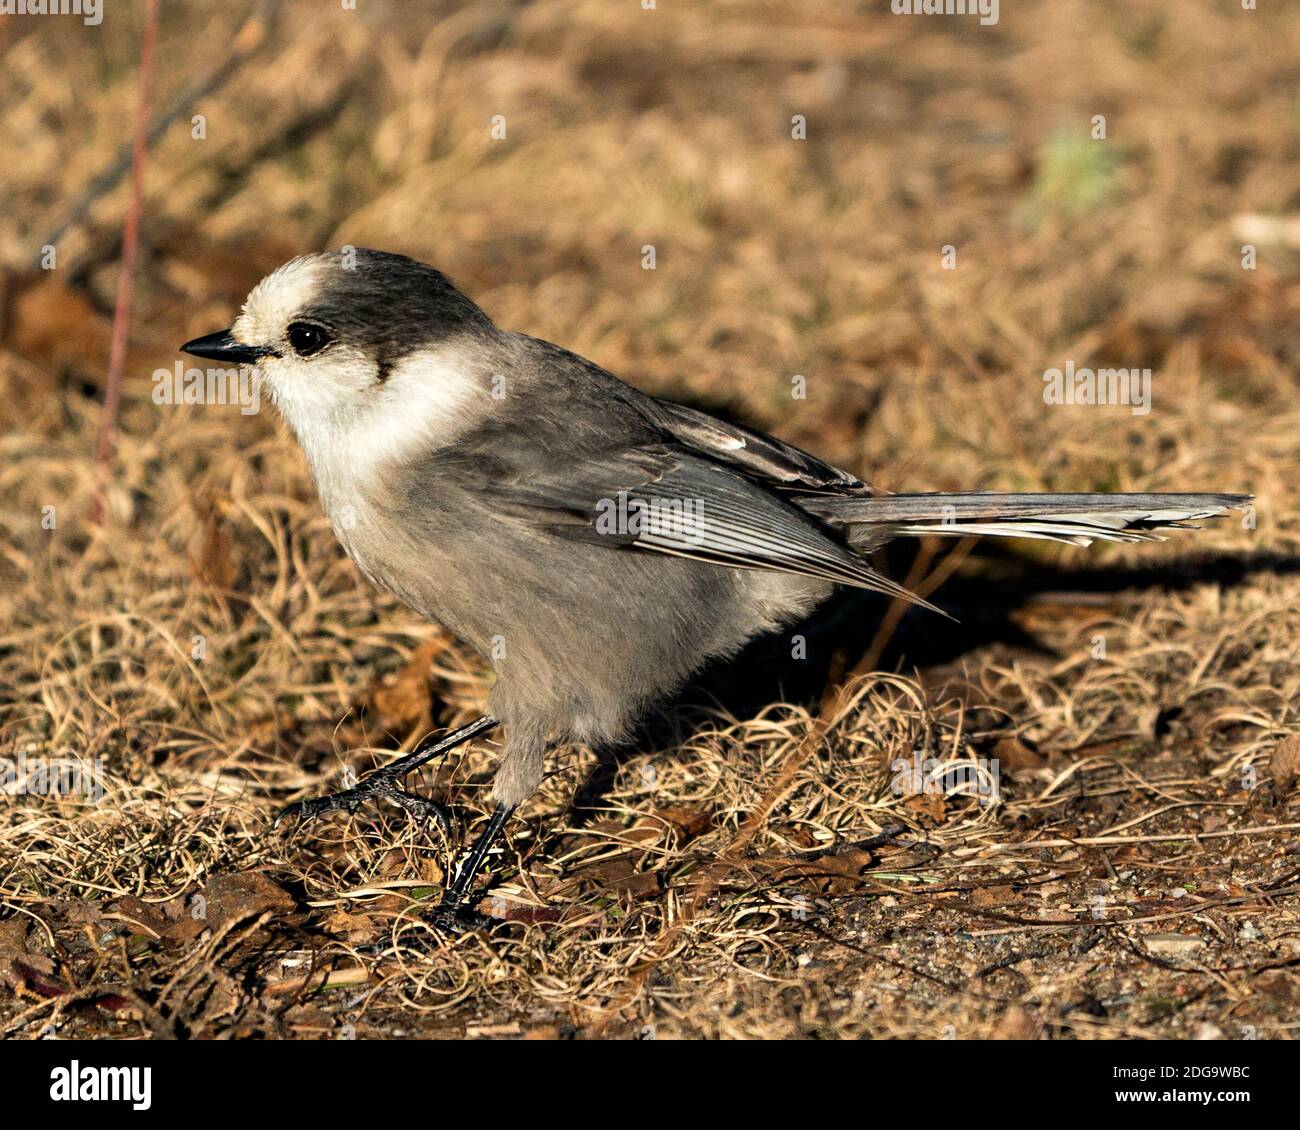 Grey Jay Nahaufnahme Profil Ansicht auf dem Boden in seiner Umgebung und Lebensraum, zeigt graue Feder Gefieder und Vogelschwanz. Bild. Bild. Hochformat. Gra Stockfoto